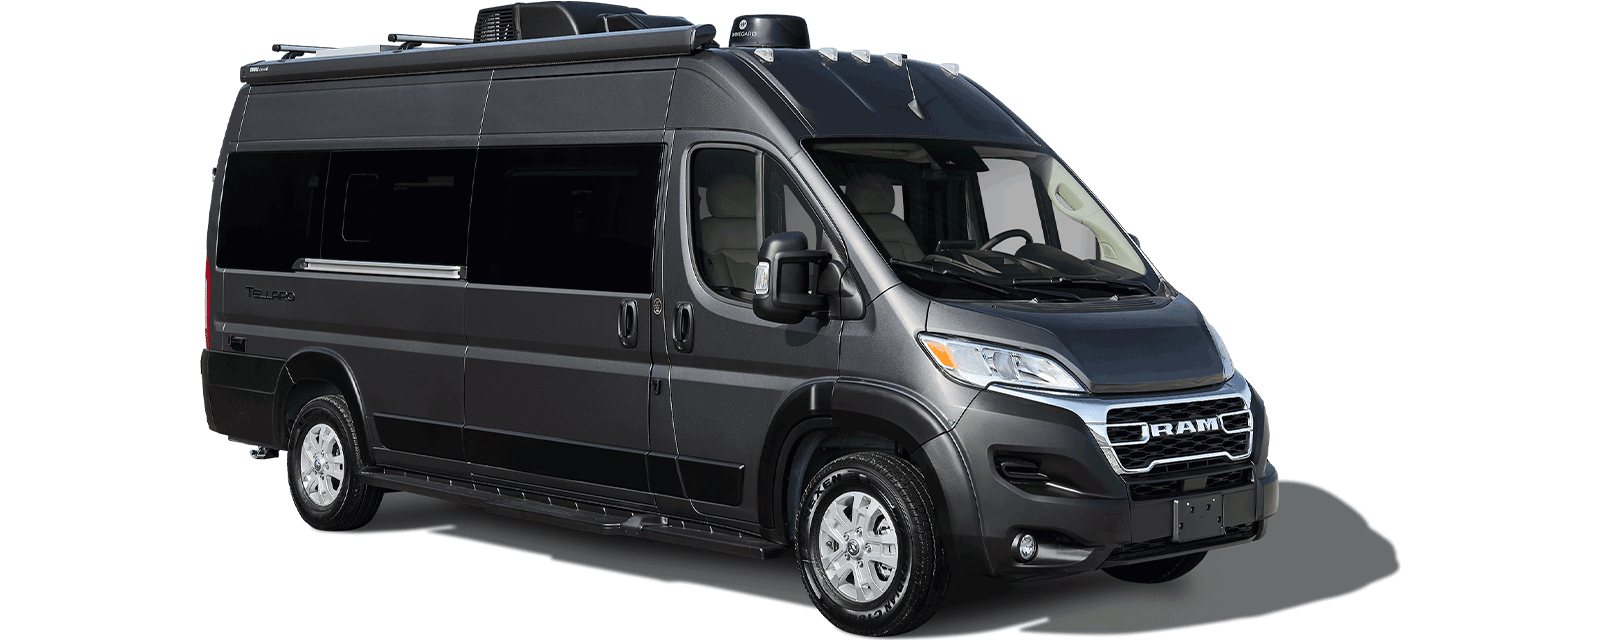 Thor Tellaro® B Vans - Thor Motor Coach